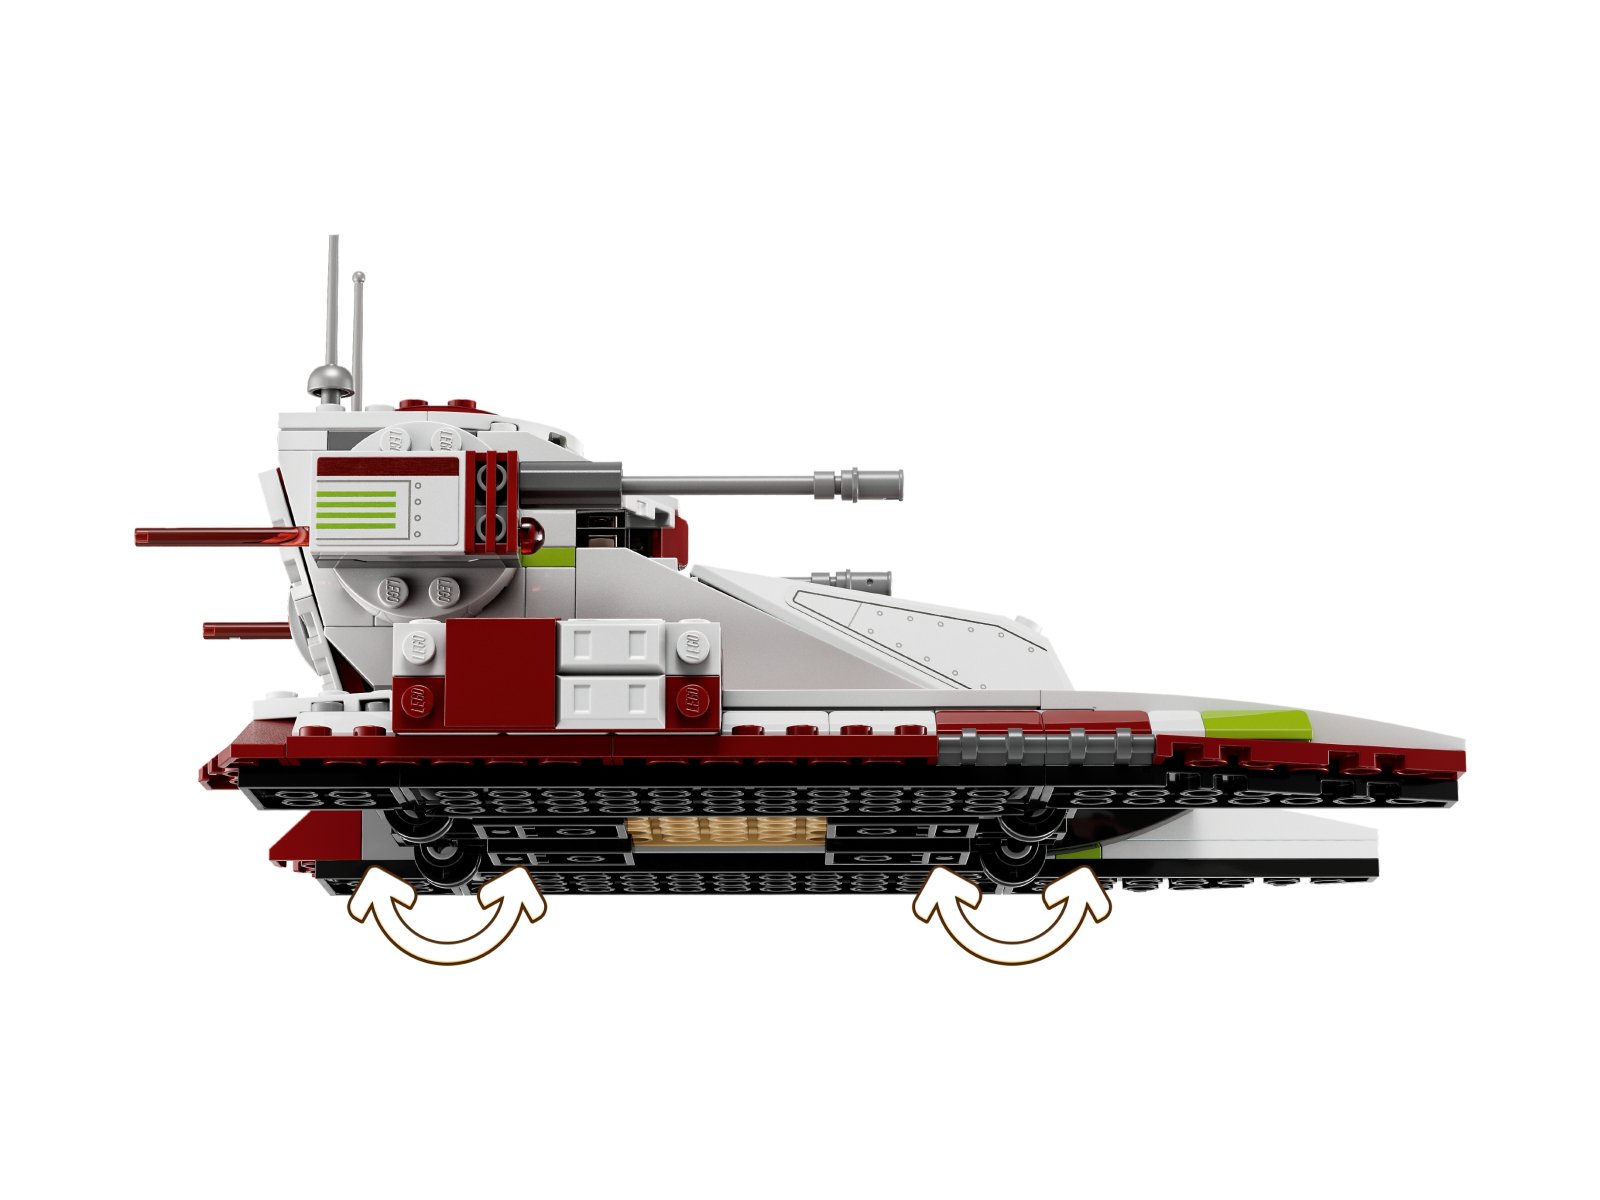 LEGO 75342 Star Wars Czołg bojowy Republiki™